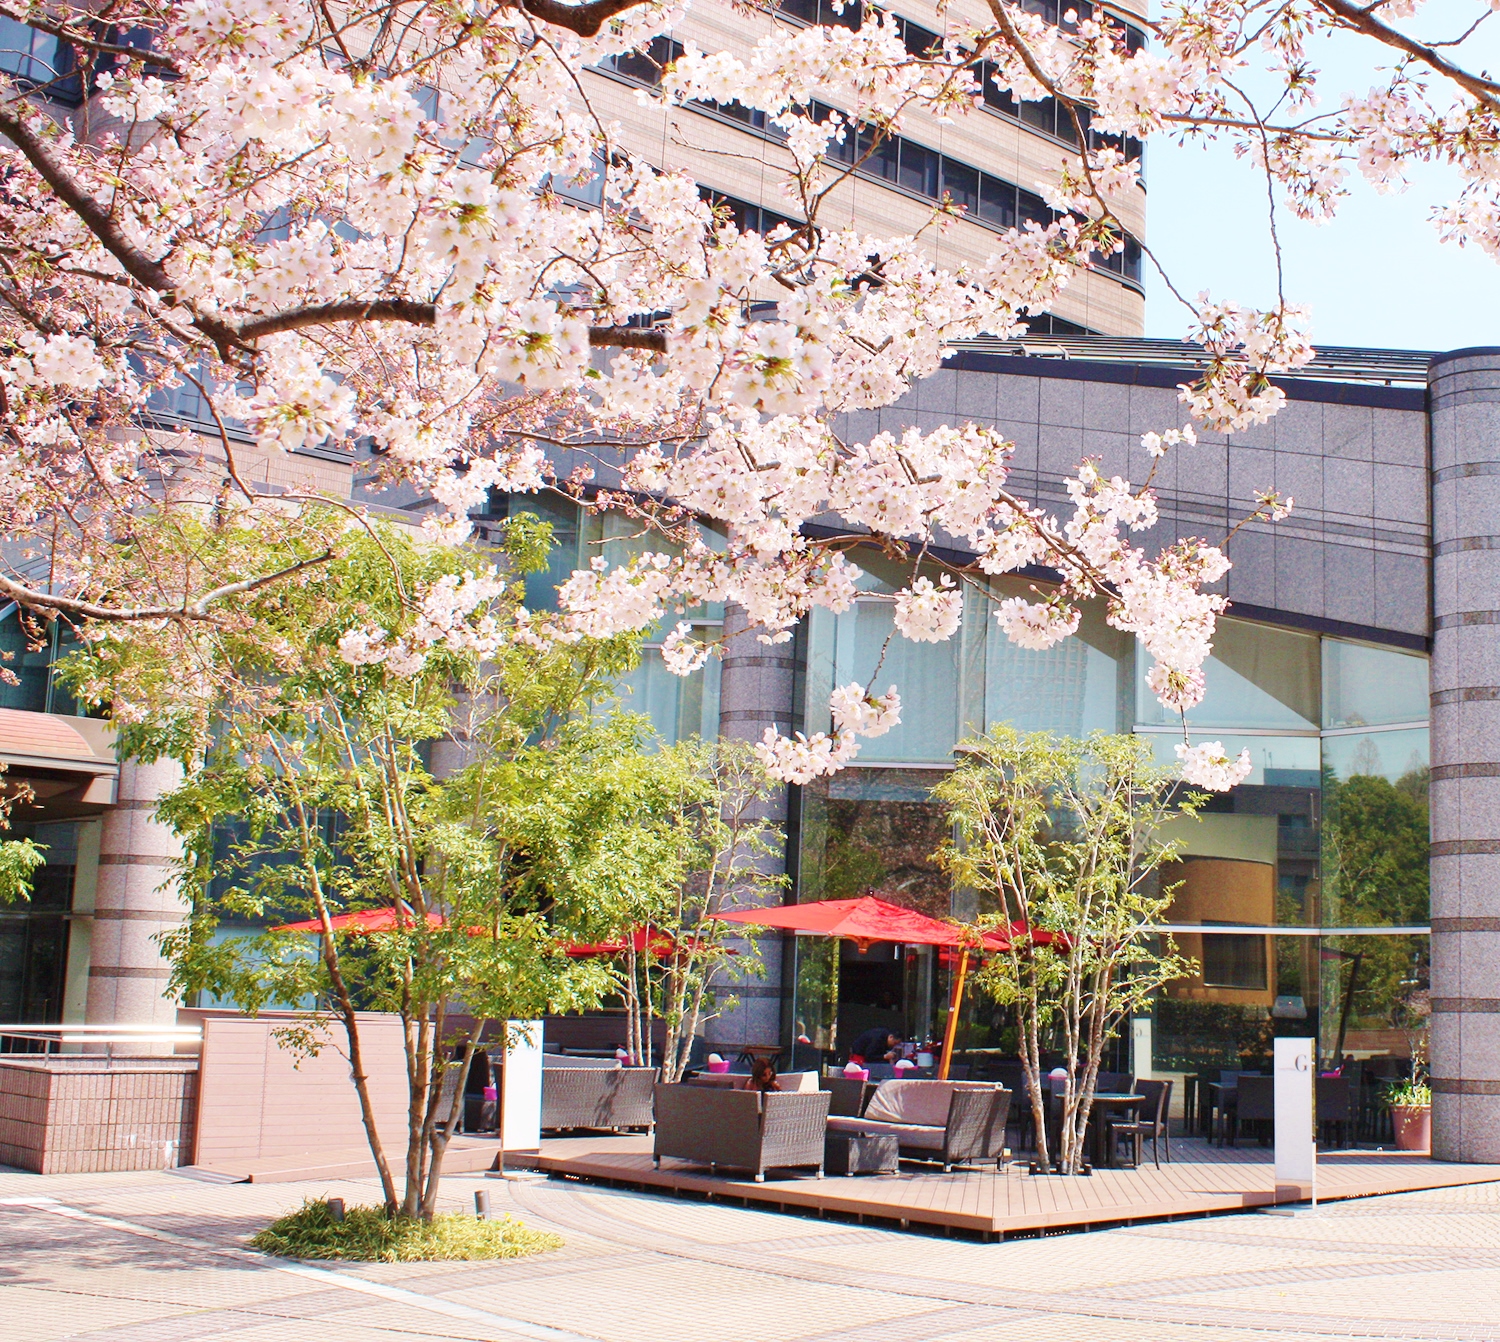 同ホテルが立地する御殿山は、江戸時代から桜の名所として知られている。